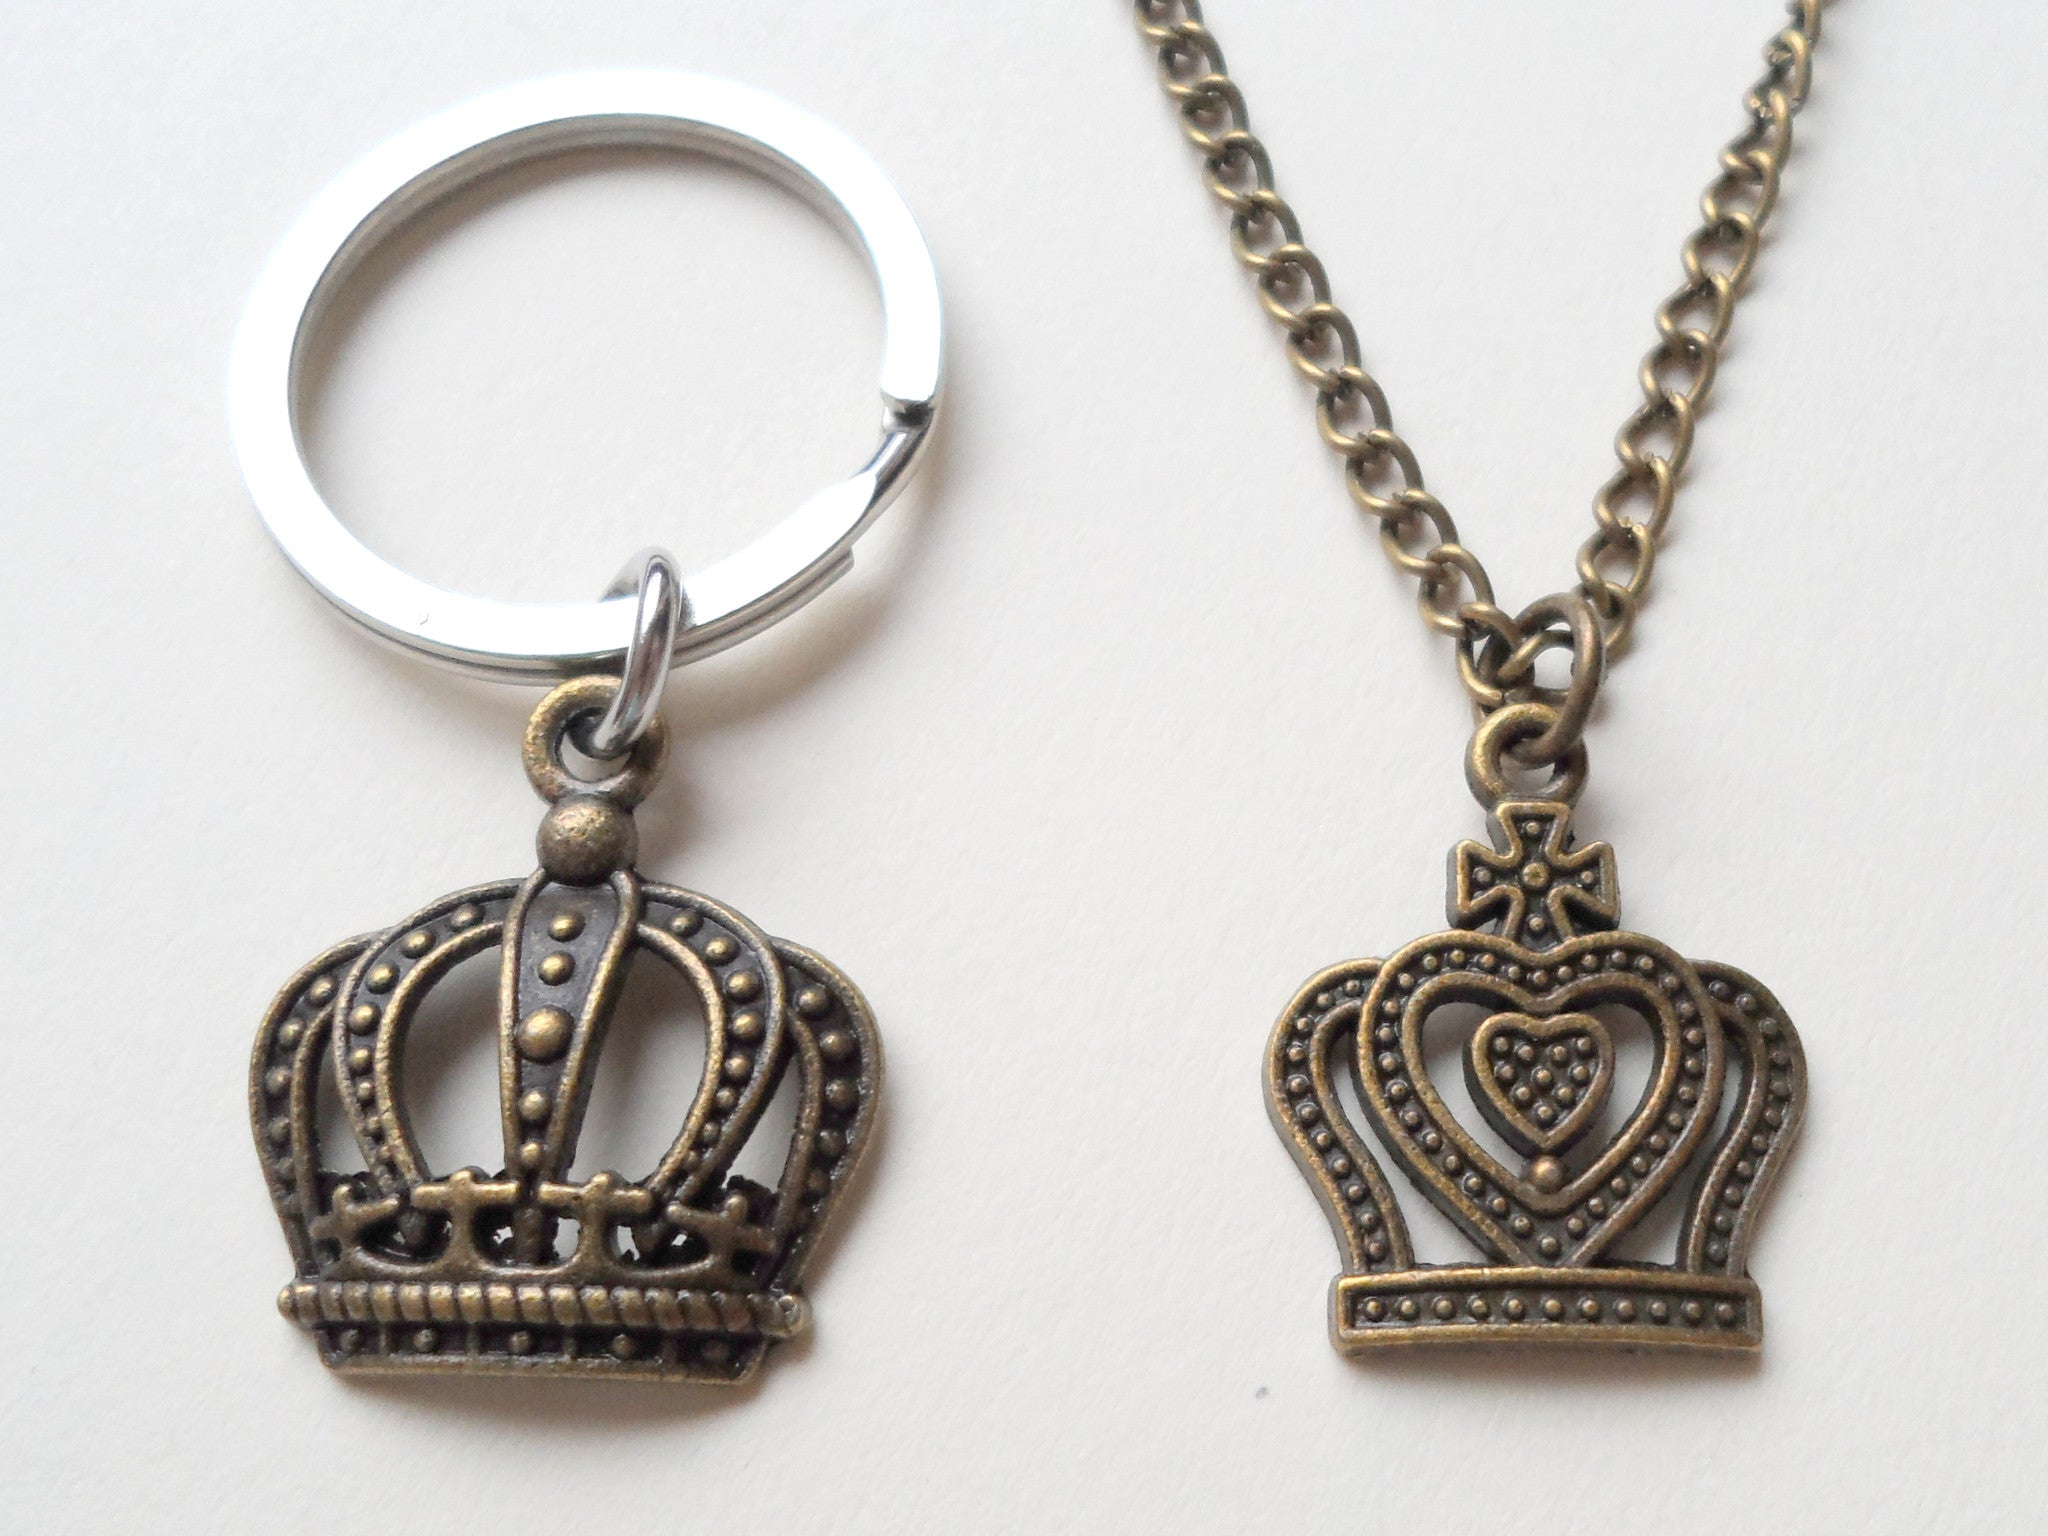 King's Key Pendant